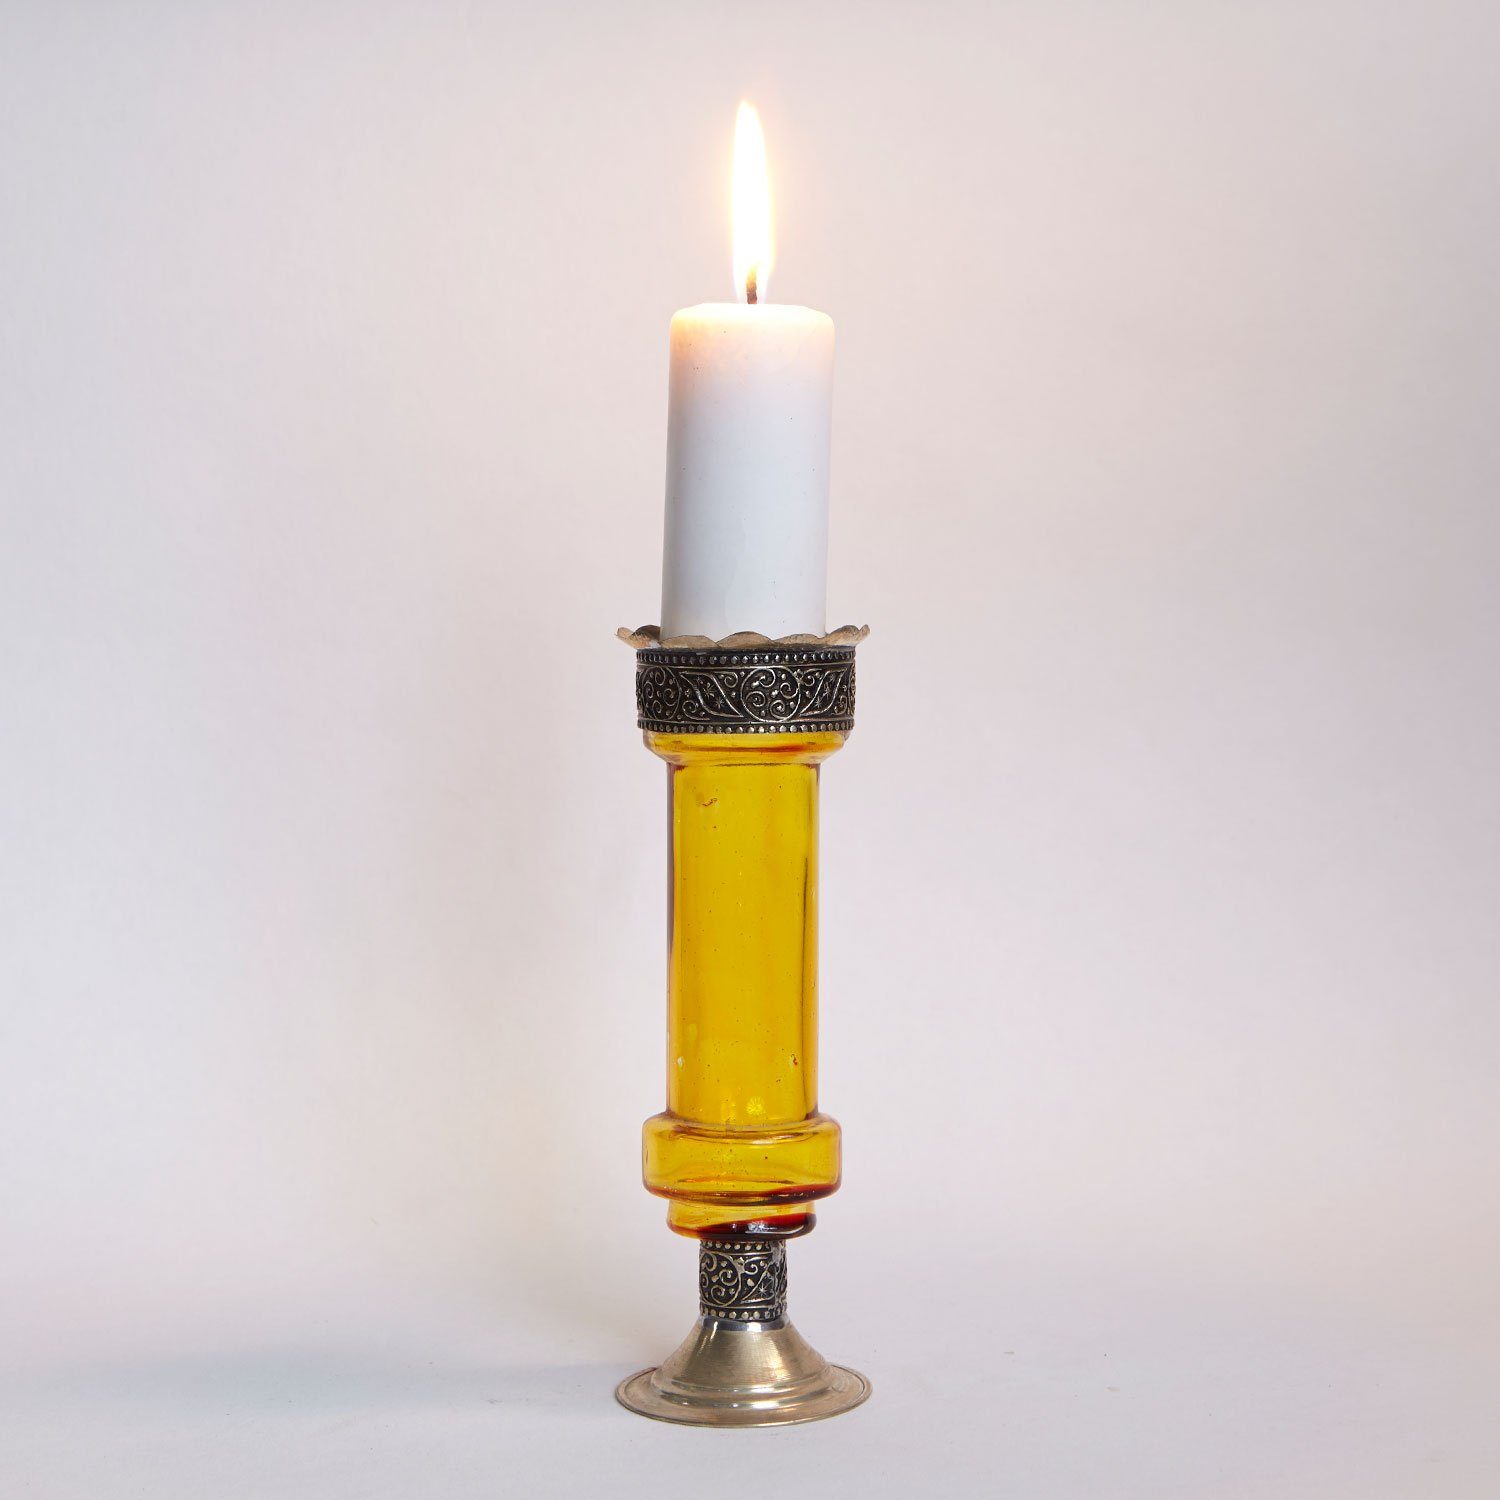 Casa Moro Kerzenständer Orientalischer Kerzenständer marokkanische Kerzenleuchter Manar (Kerzenhalter für romantische Beleuchtung), Kerzenlicht & Weihnachtsdekoration Gelb